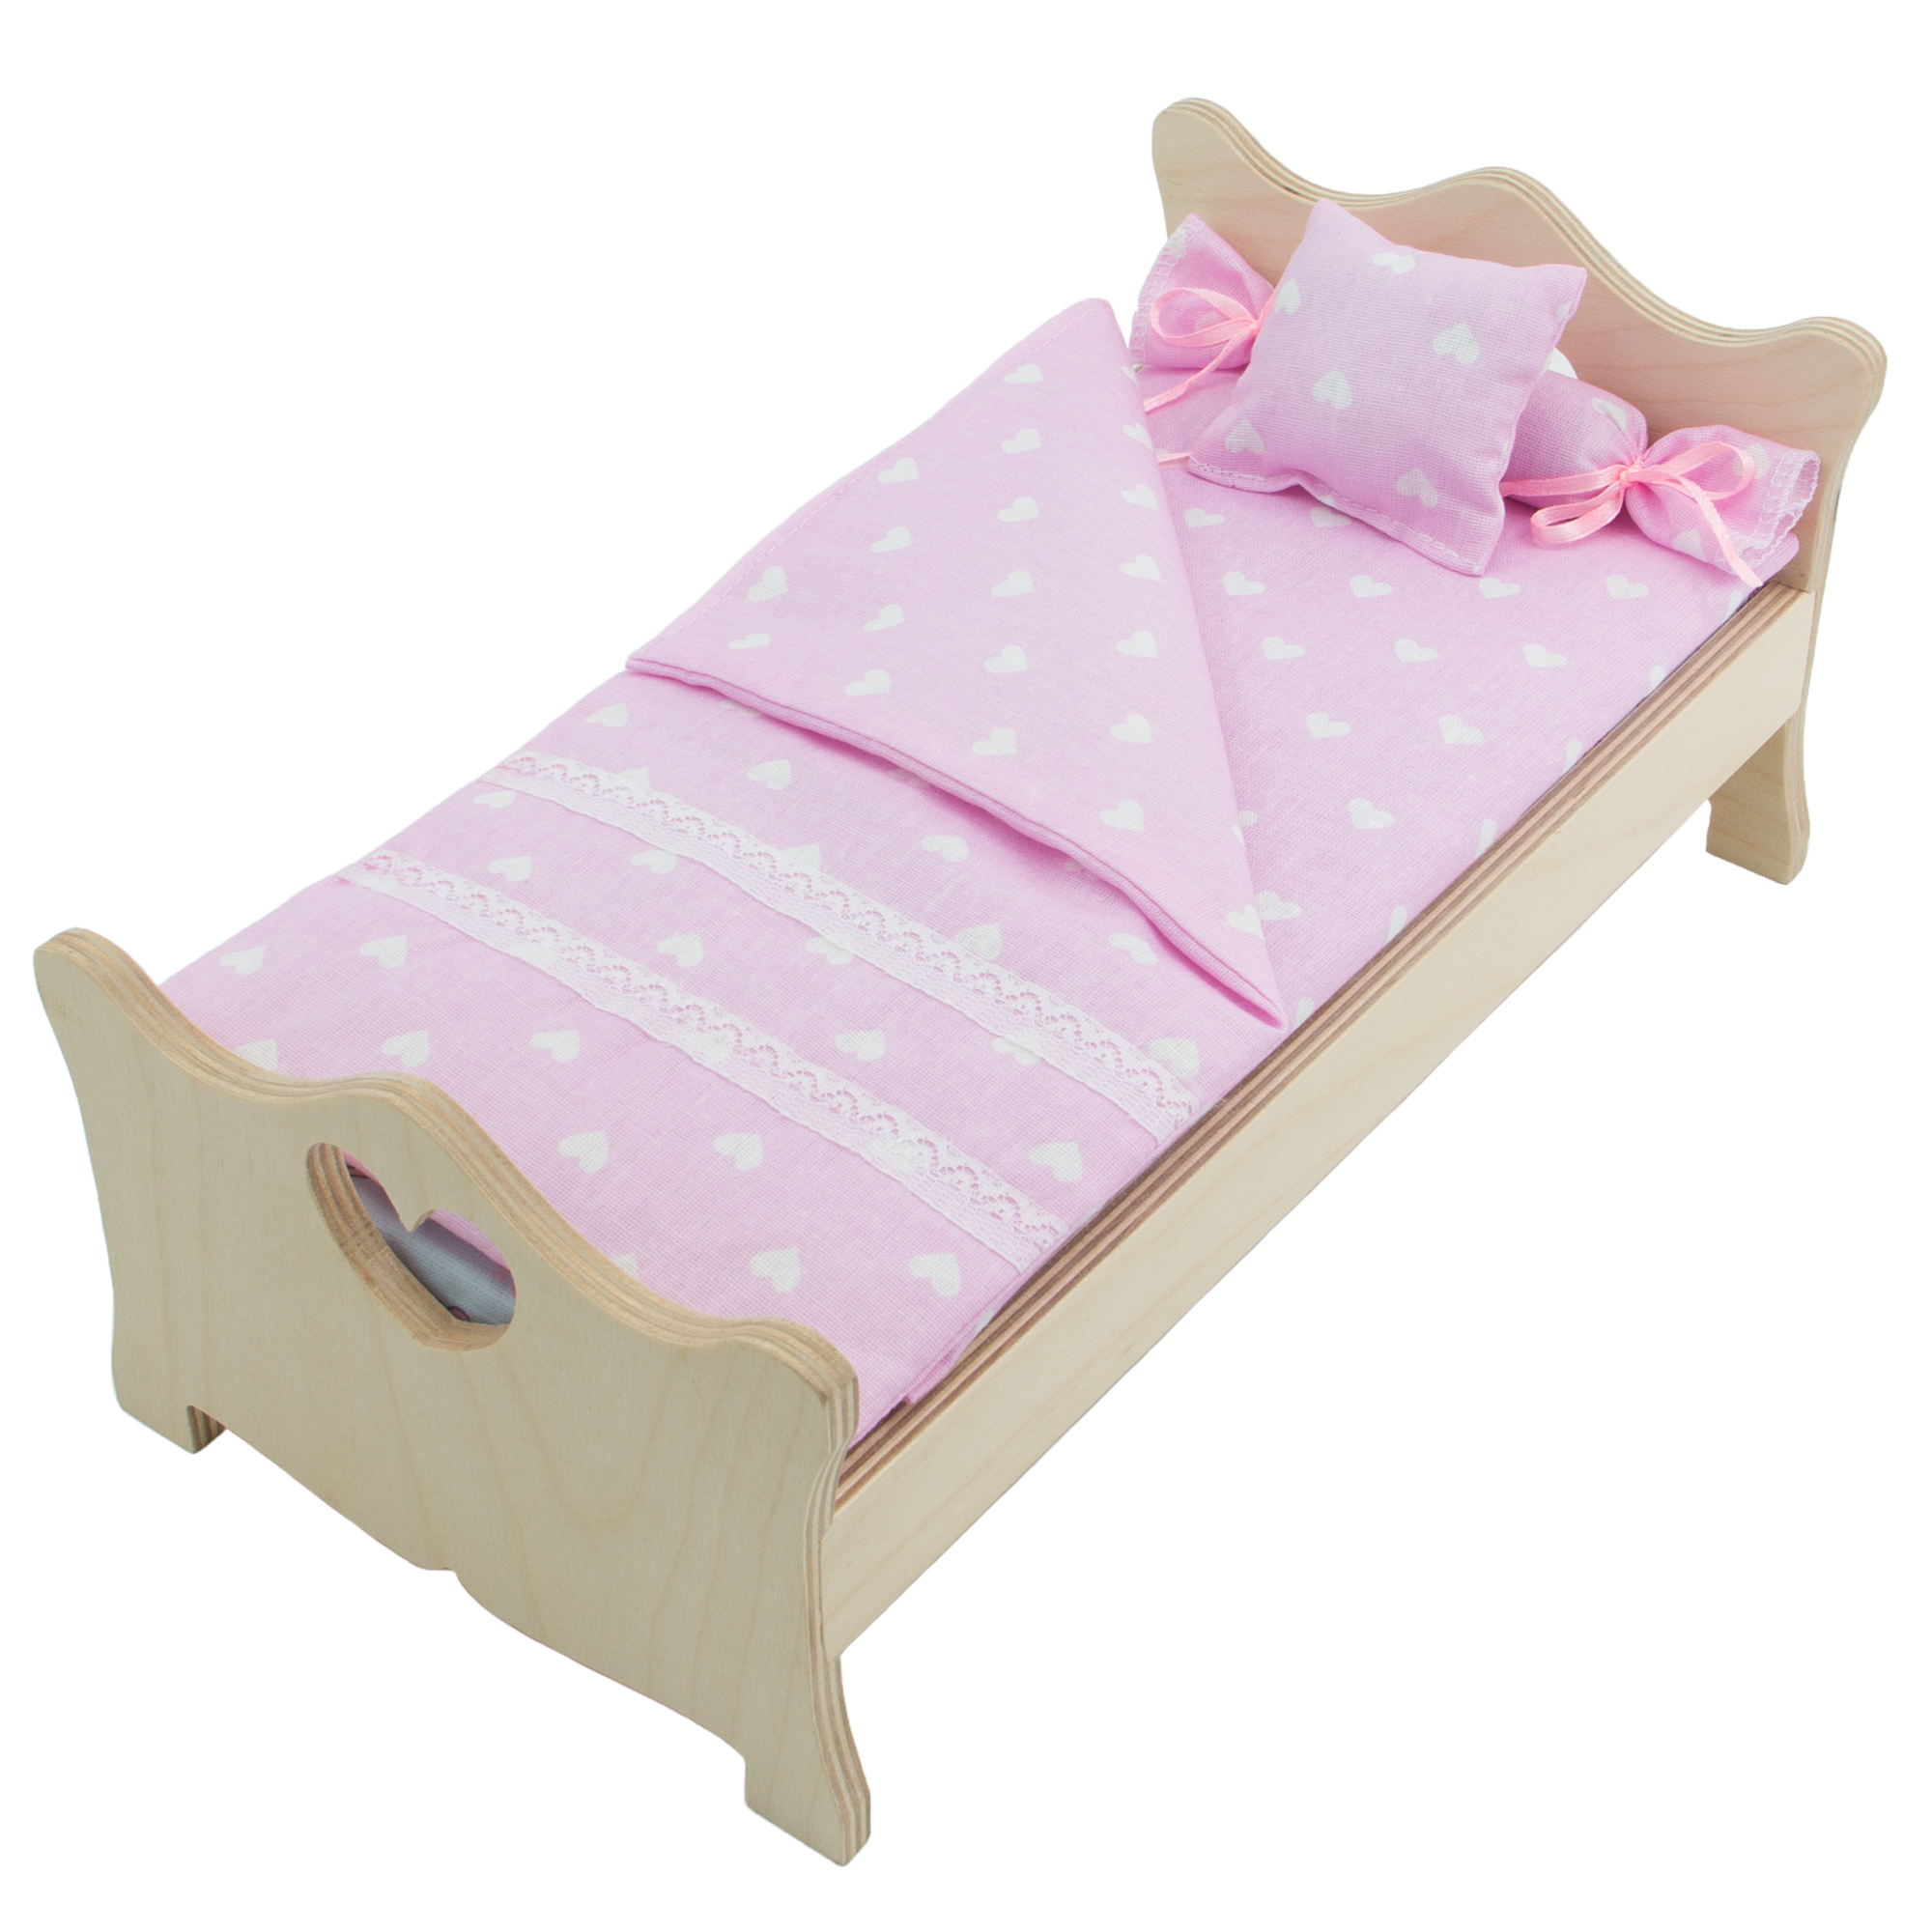 Комплект постельного белья Модница для куклы 29 см бледно-розовый 2002бледно-розовый - фото 7